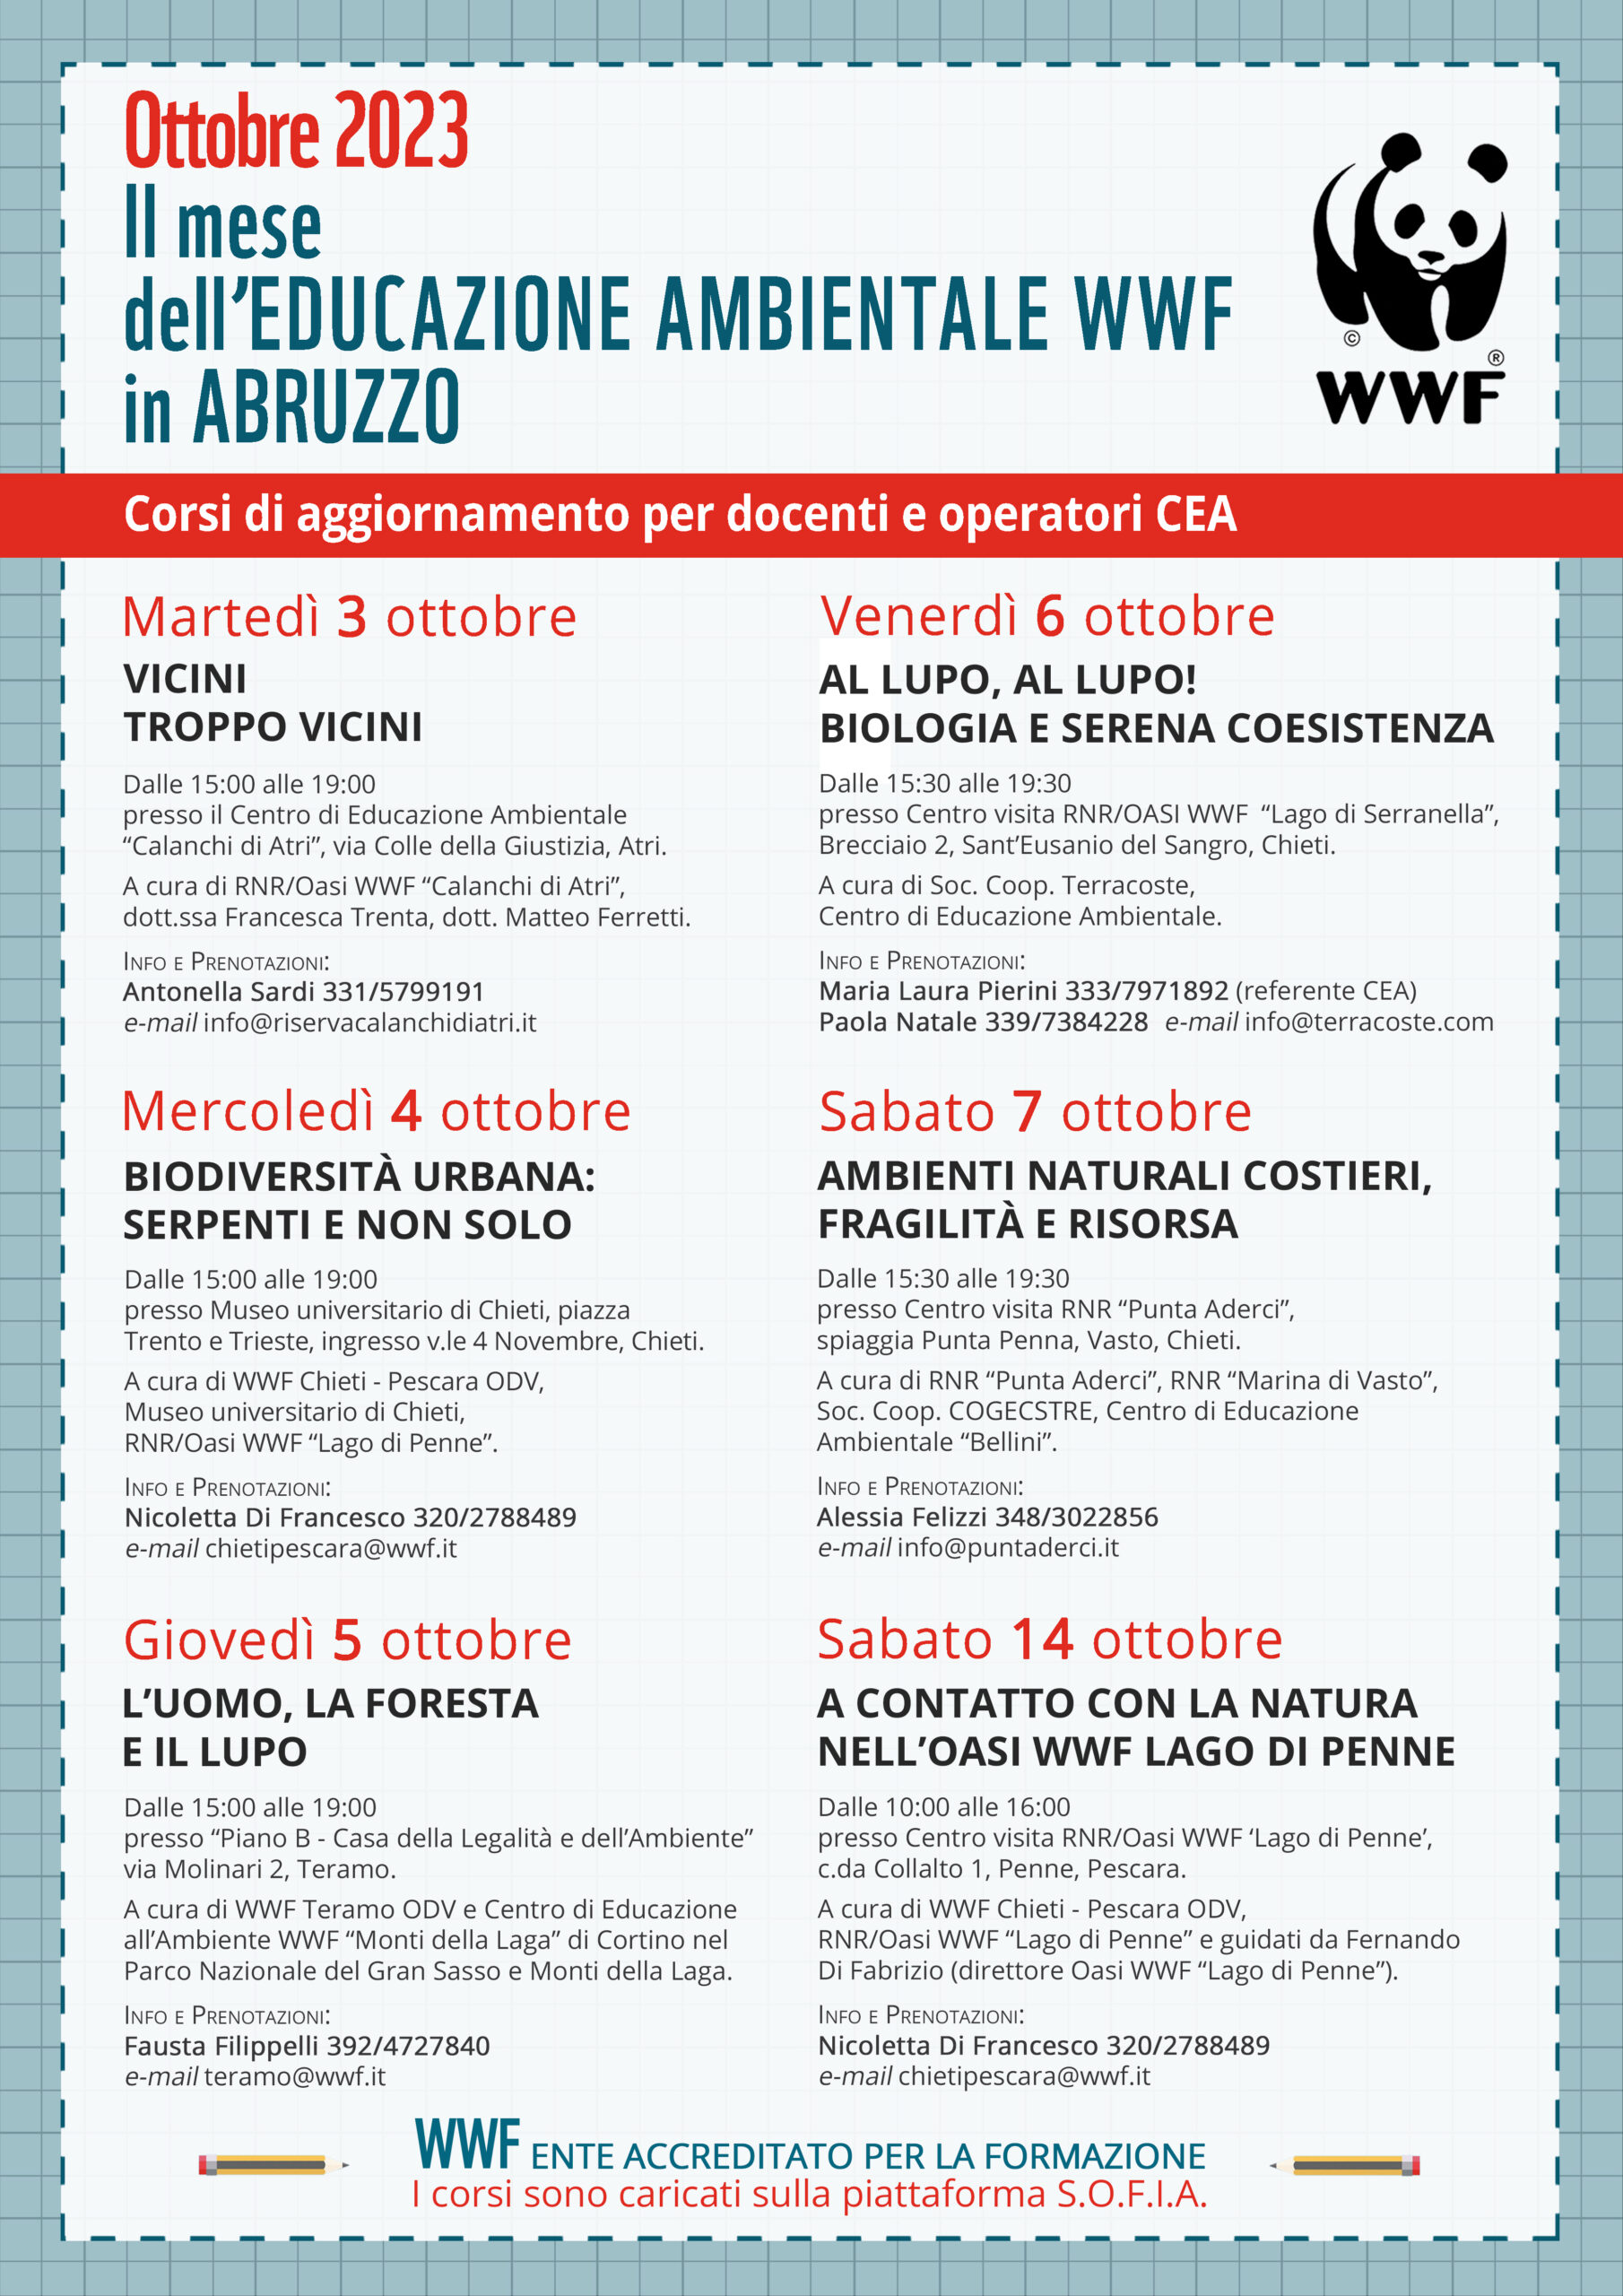 Wwf Abruzzo, corso di aggiornamento per docenti e operatori di Centri di Educazione Ambientale 